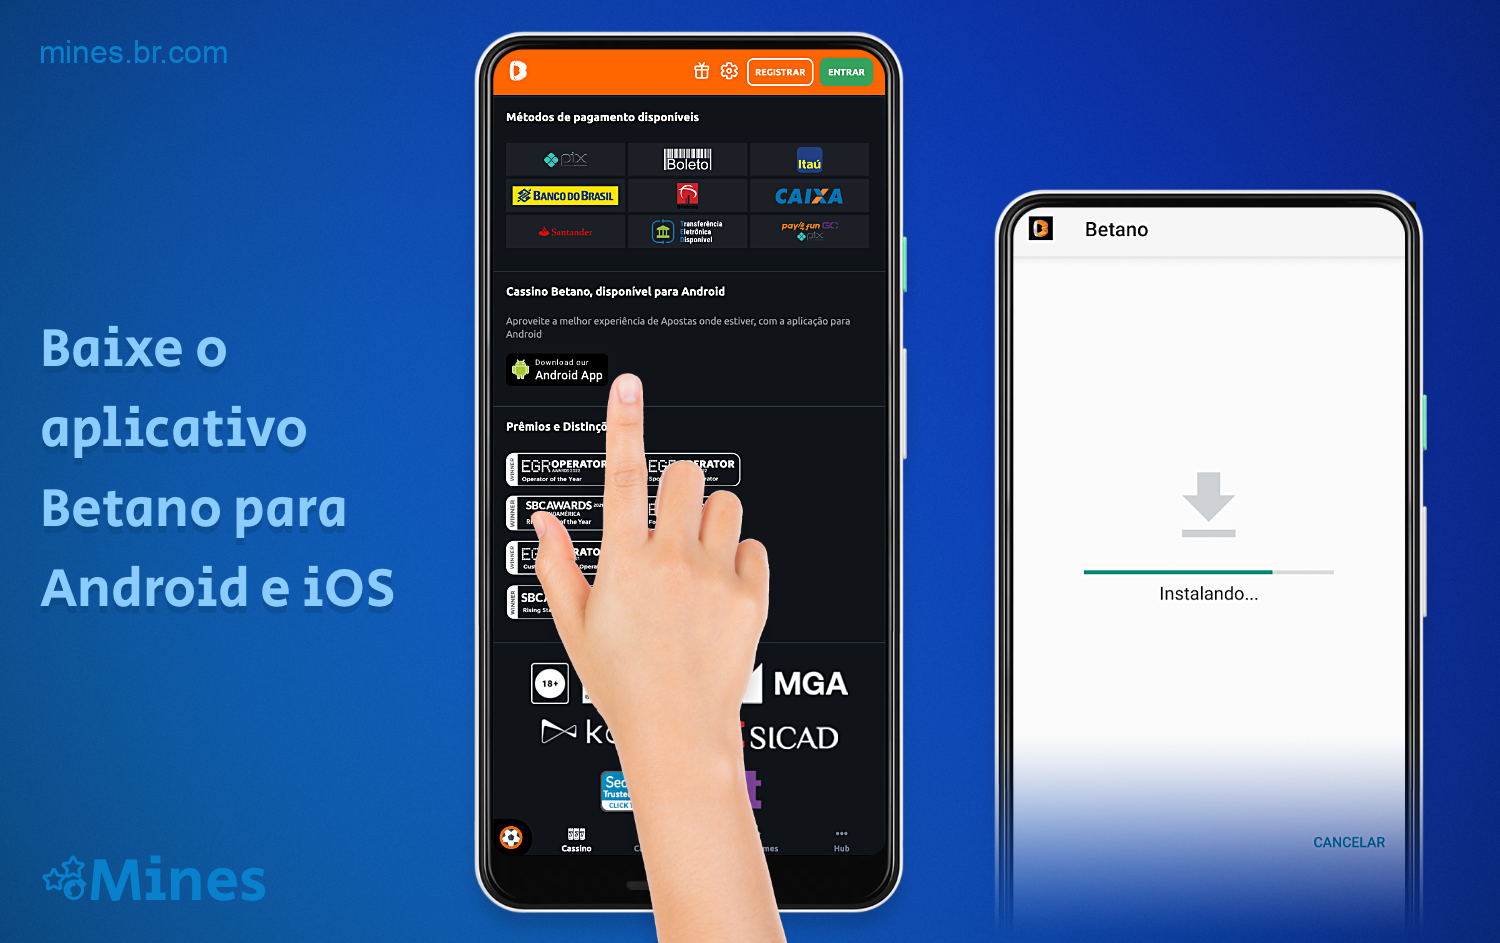 Os usuários do Brasil podem baixar o aplicativo Betano para dispositivos Android e iOS